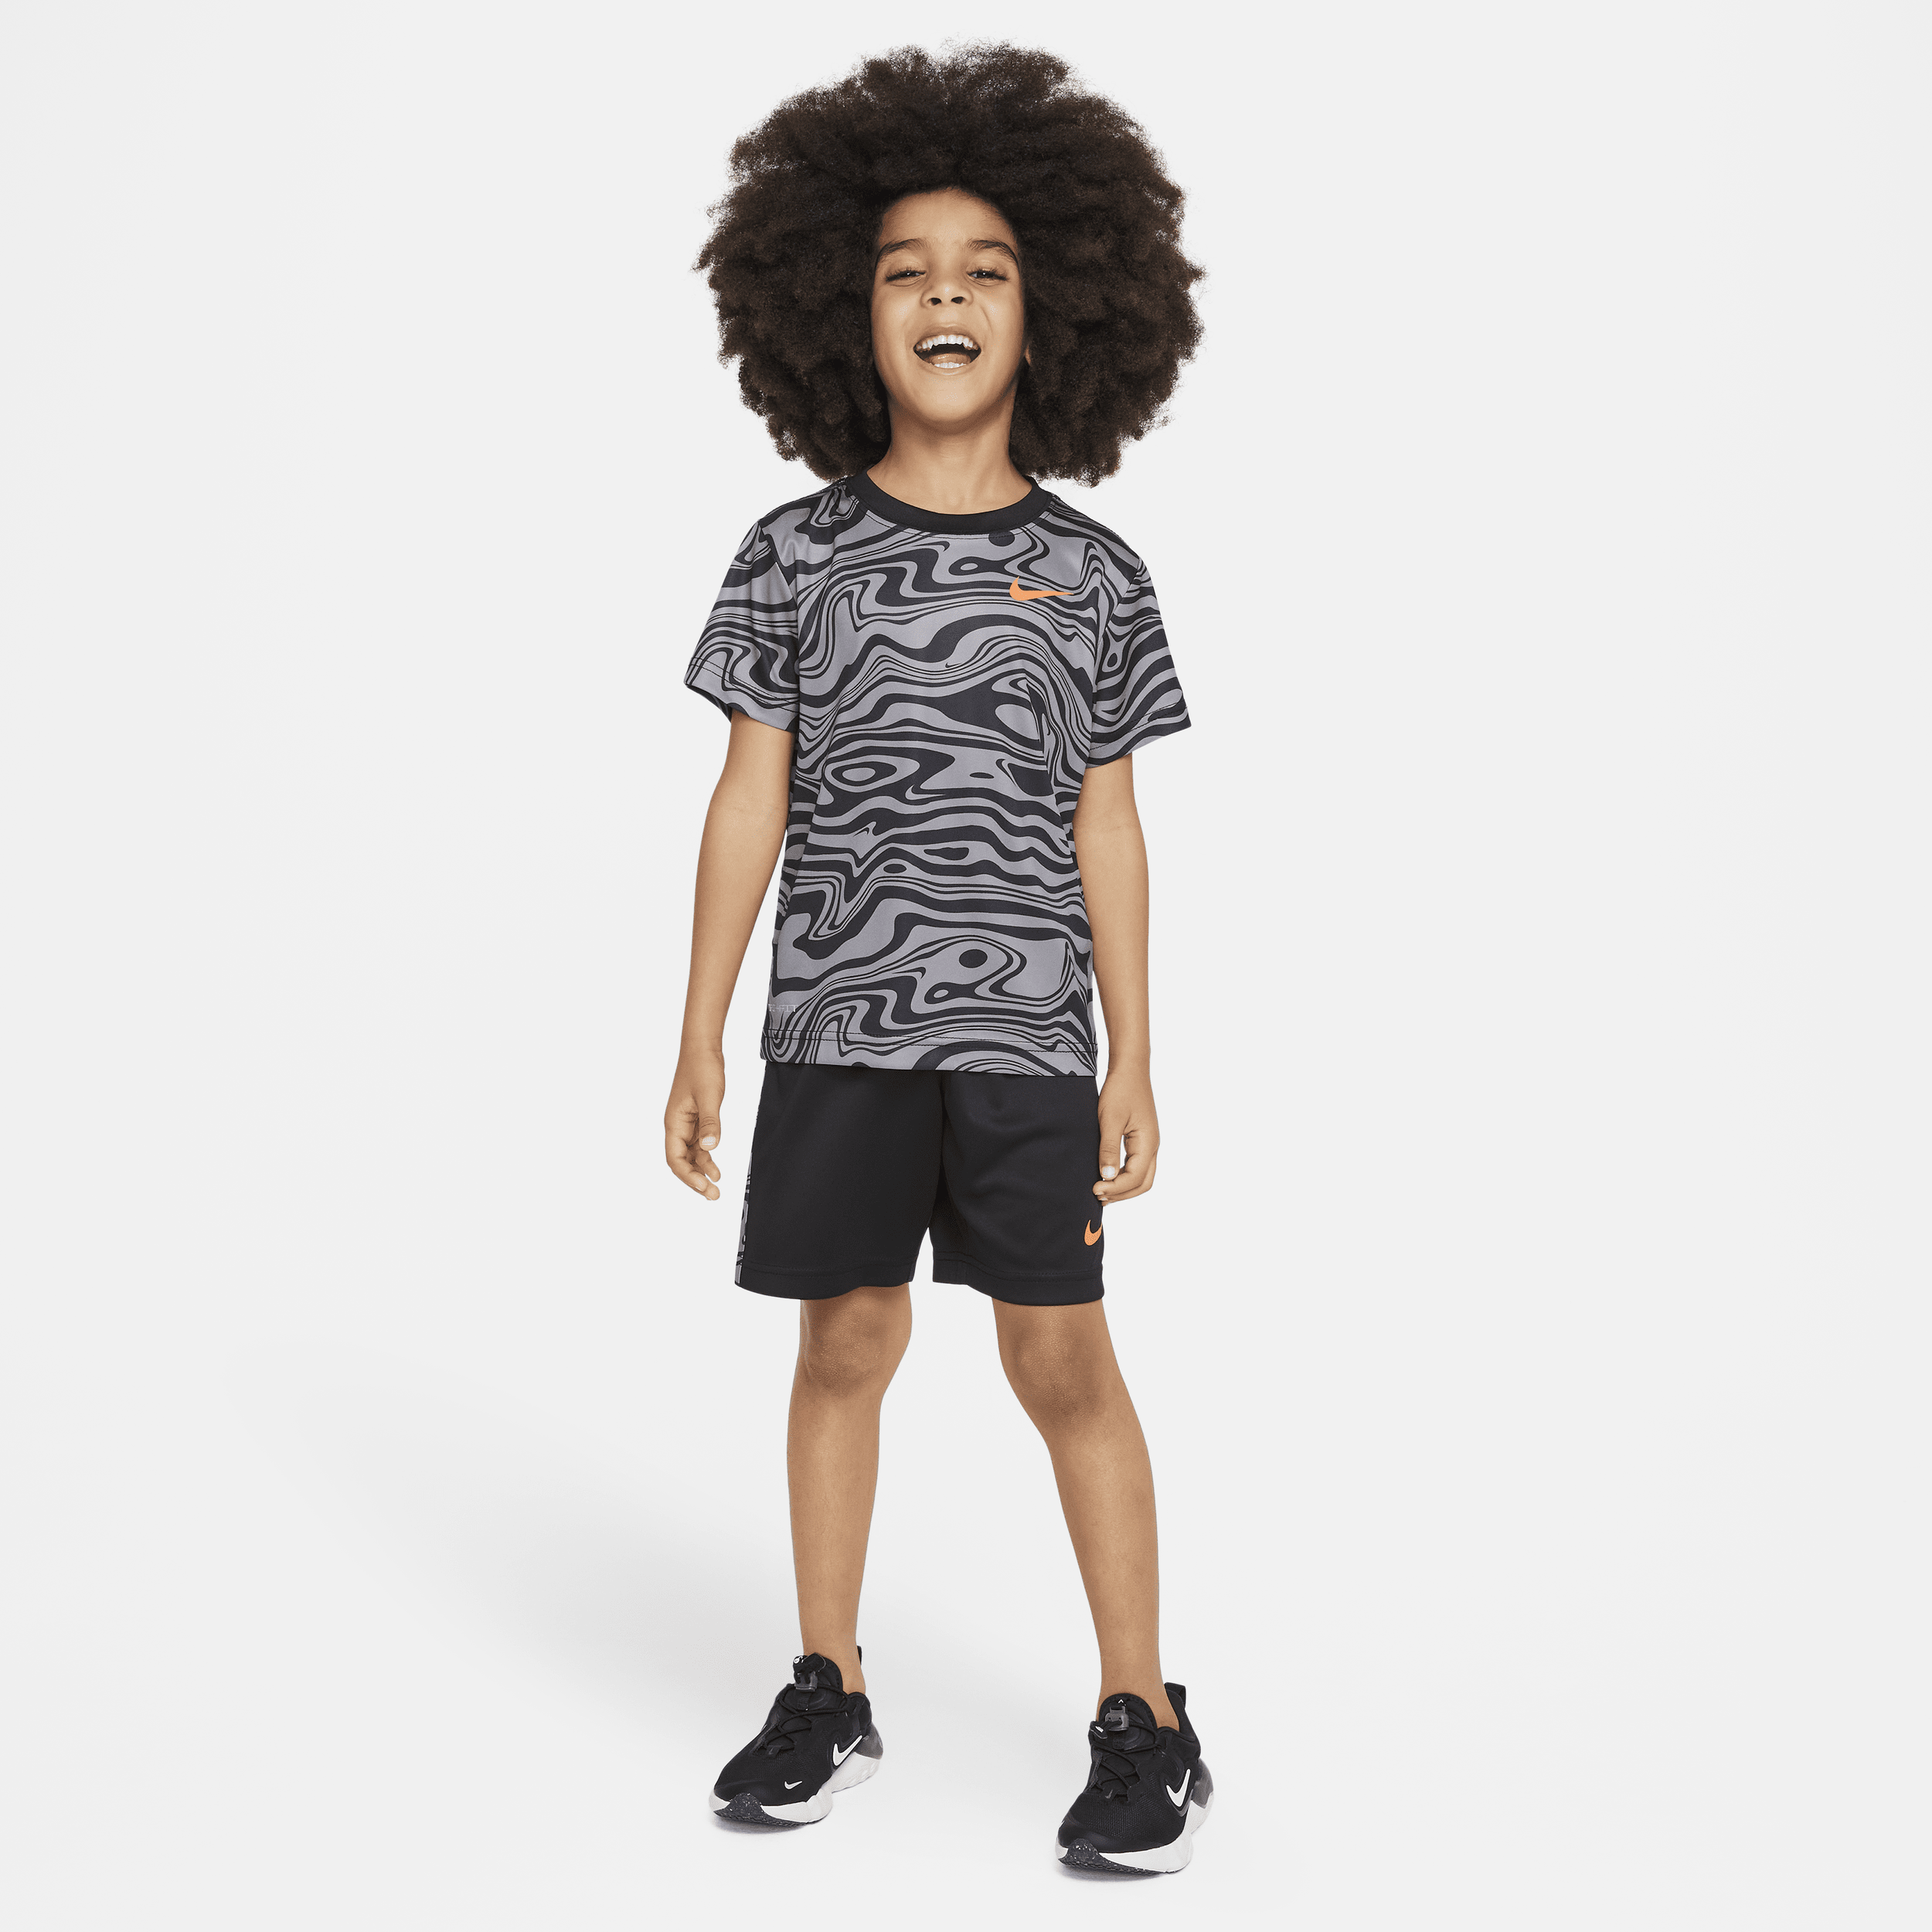 Nike Sportswear Paint Your Future Dri-fit Little Kids' Shorts Set In Black